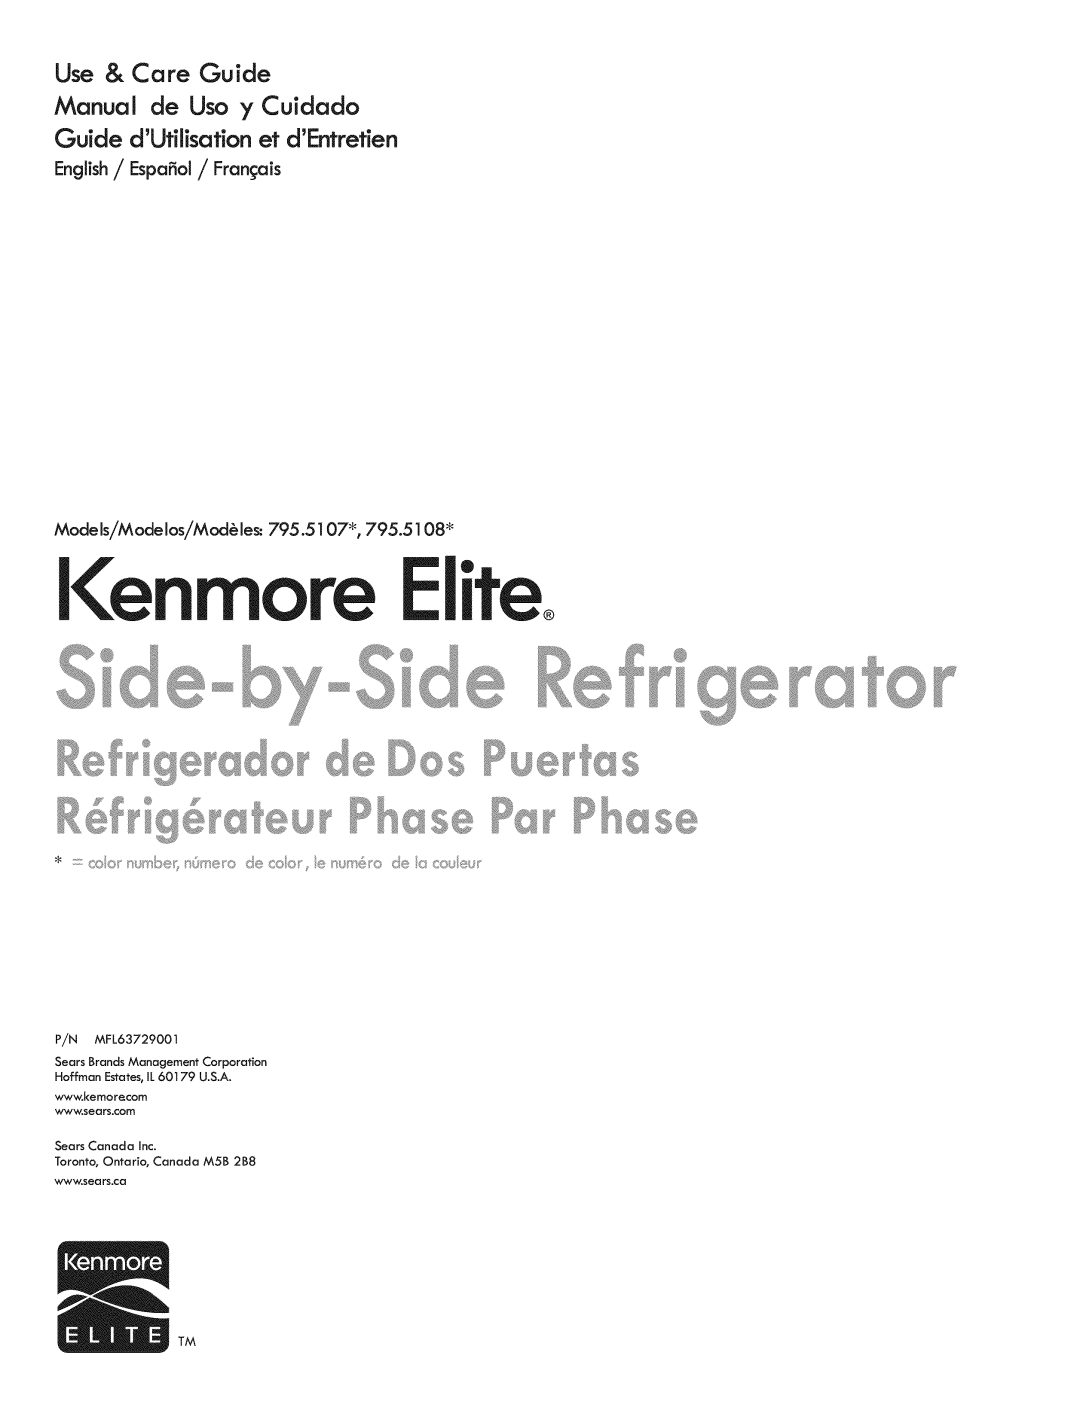 Kenmore 795.5108, 795.5107 manual Use & Care Guide Manual de Uso y Cuidado, Kenmore Eli?co, P sse 